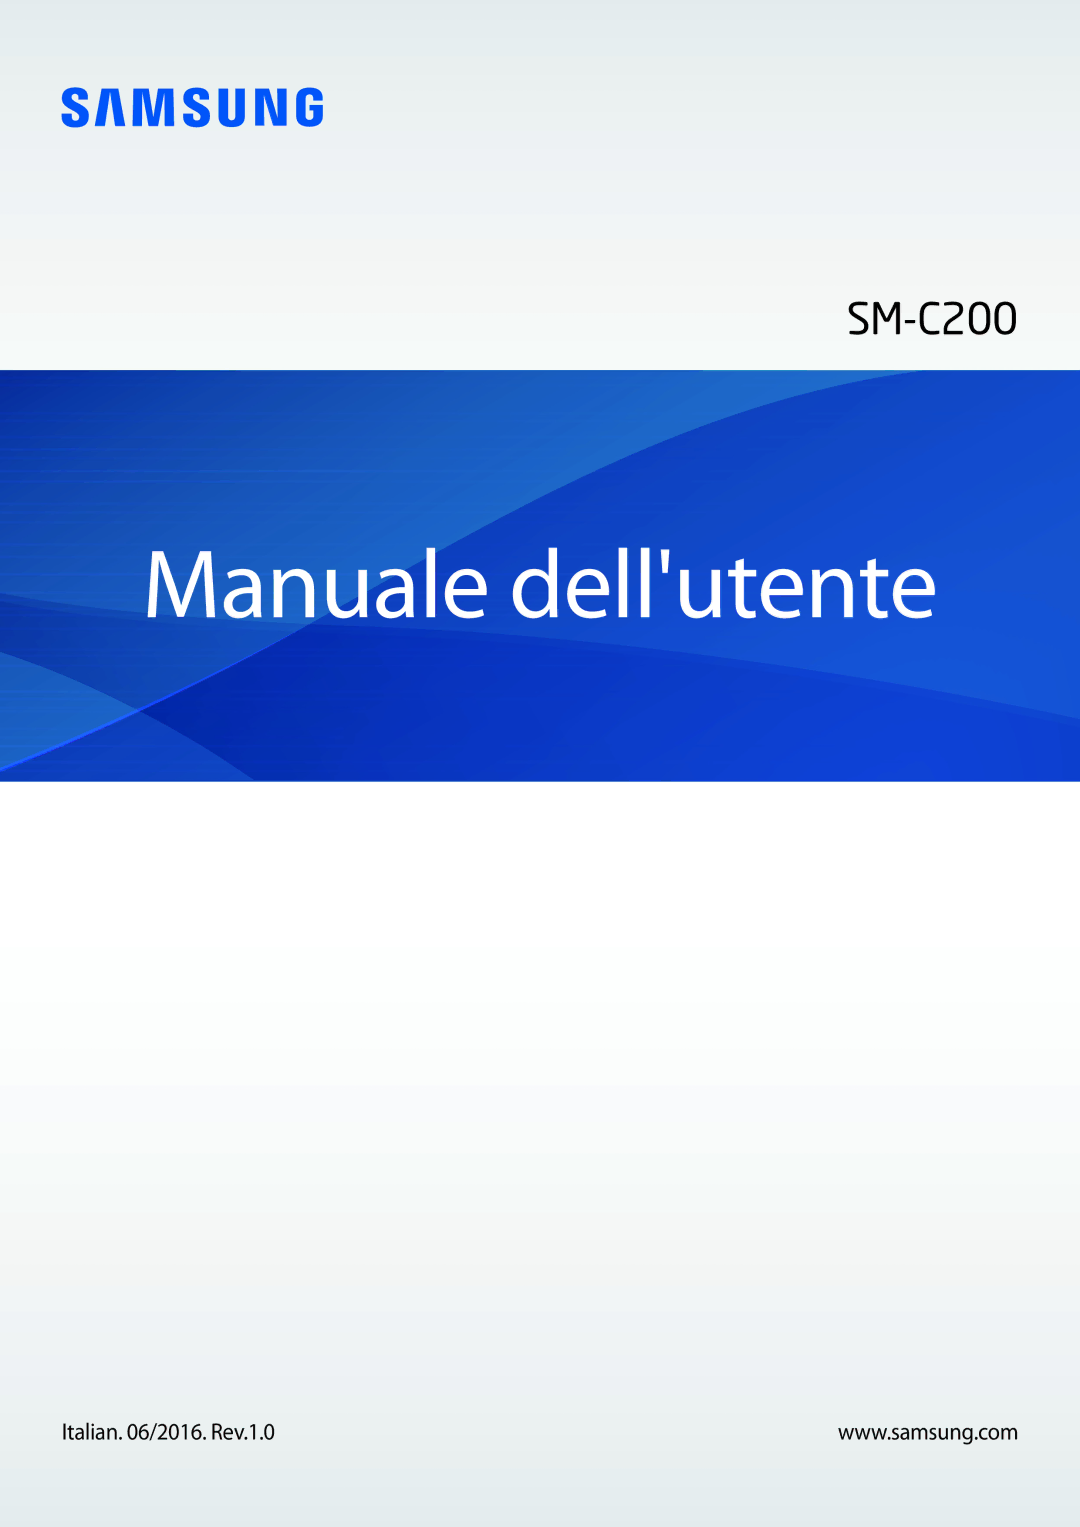 Samsung SM-C200NZWAITV manual Manuale dellutente 